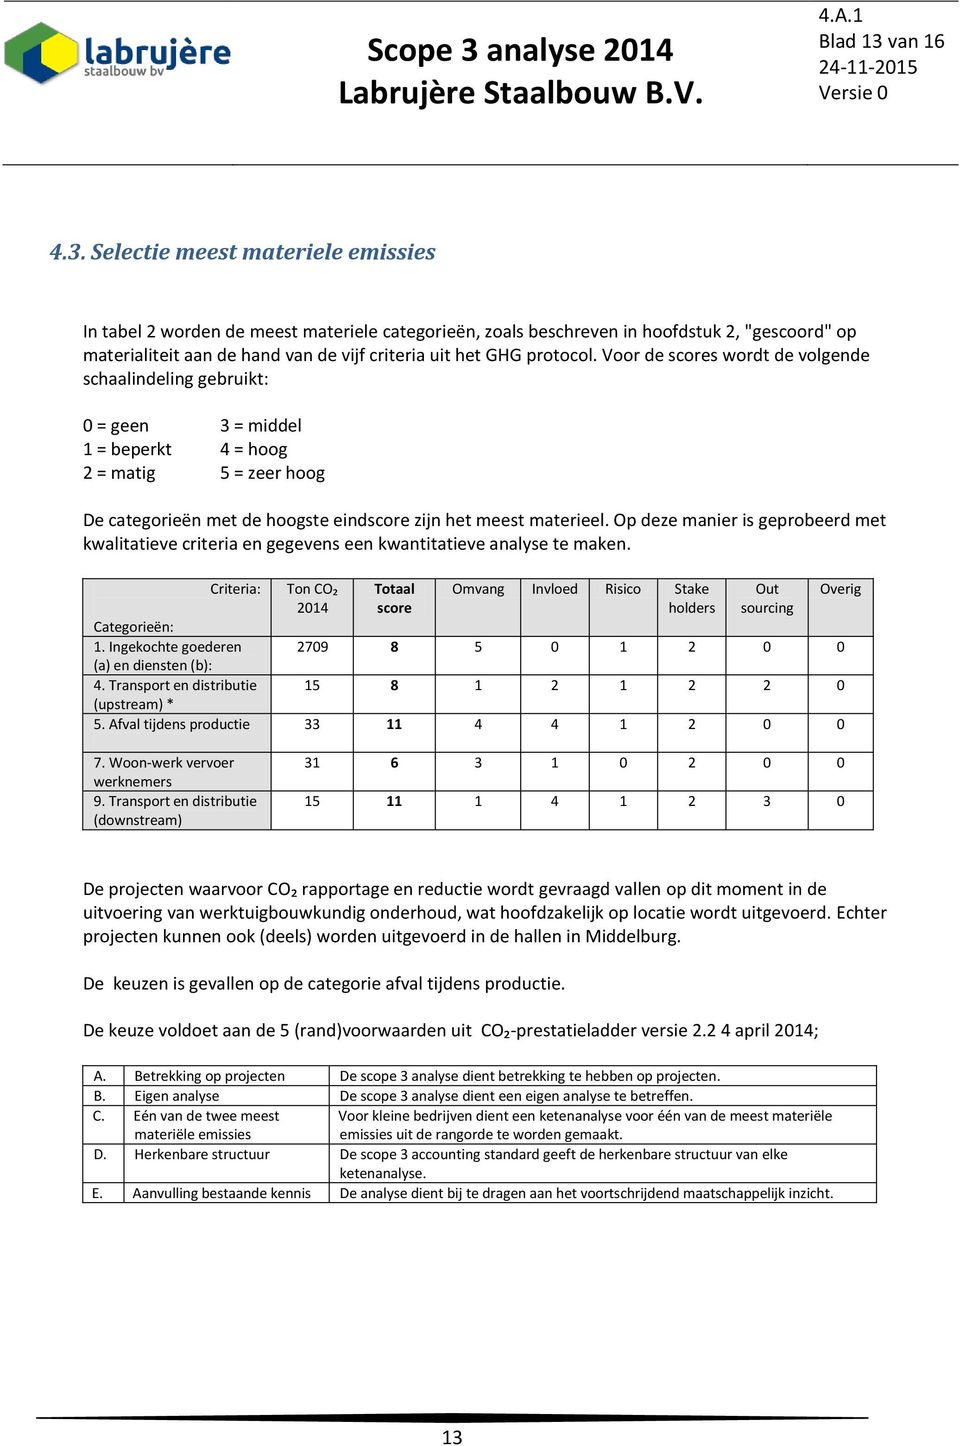 Selectie meest materiele emissies In tabel 2 worden de meest materiele categorieën, zoals beschreven in hoofdstuk 2, "gescoord" op materialiteit aan de hand van de vijf criteria uit het GHG protocol.